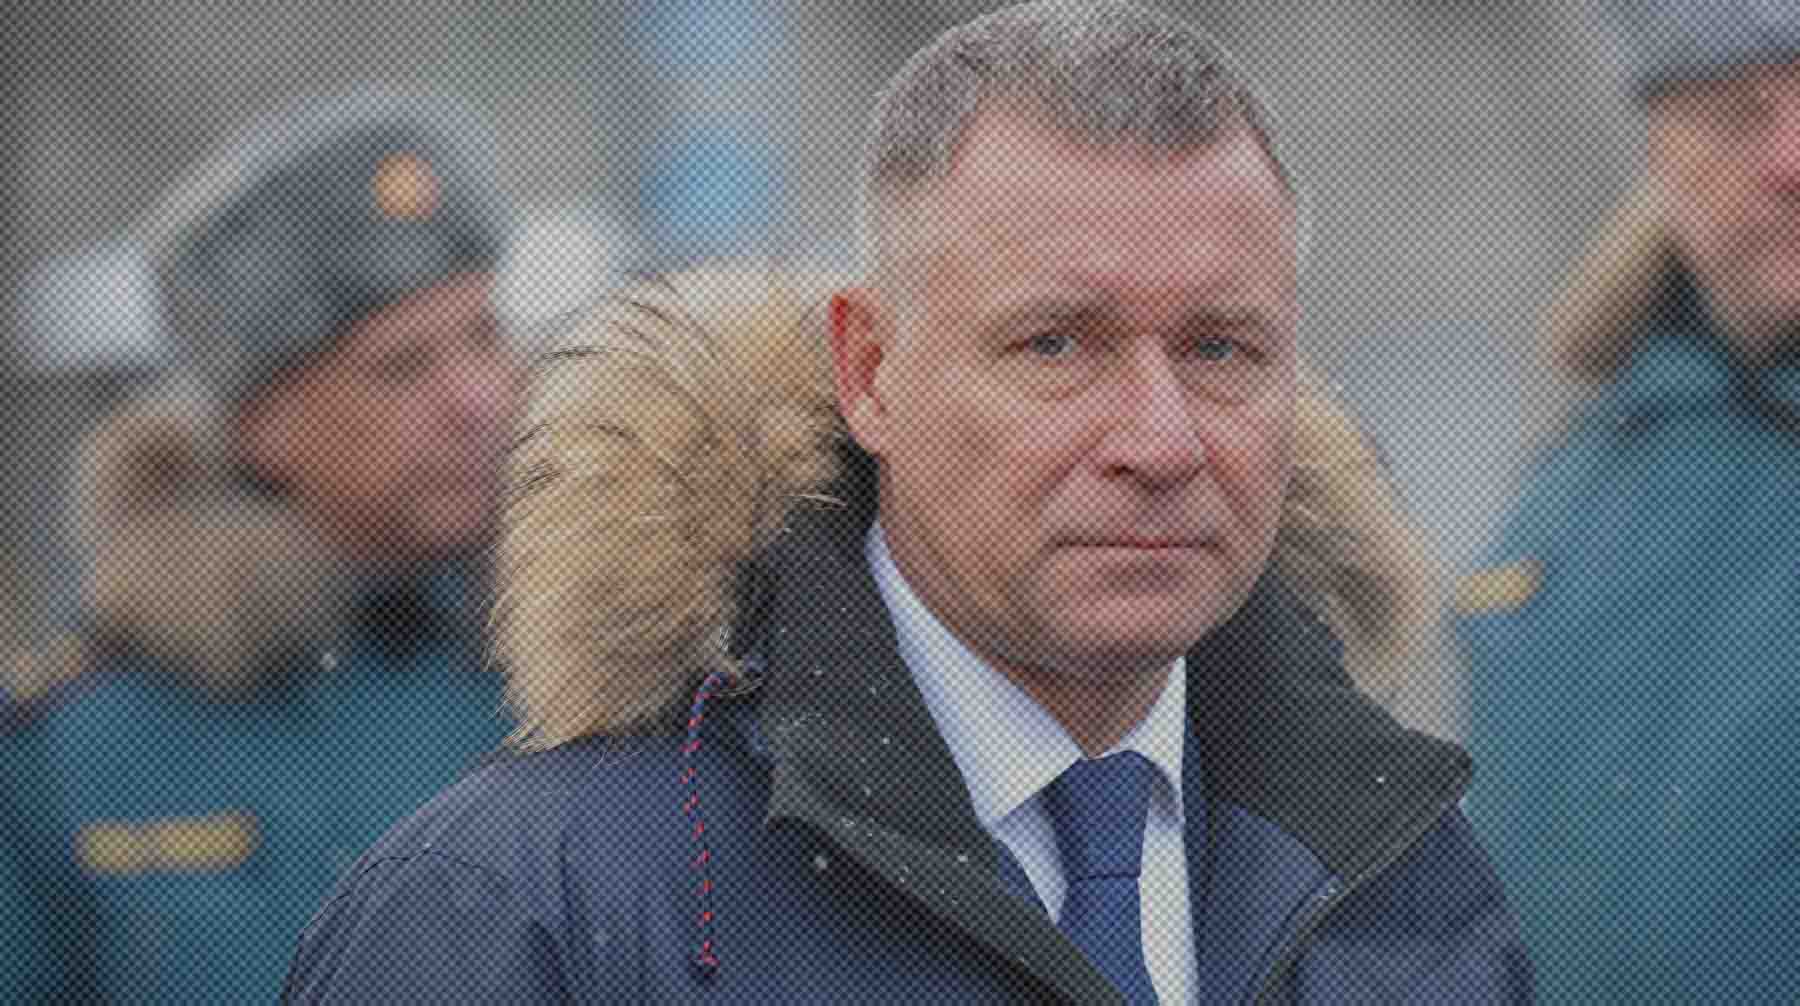 Министр погиб в Красноярском крае в возрасте 55 лет Евгений Зиничев